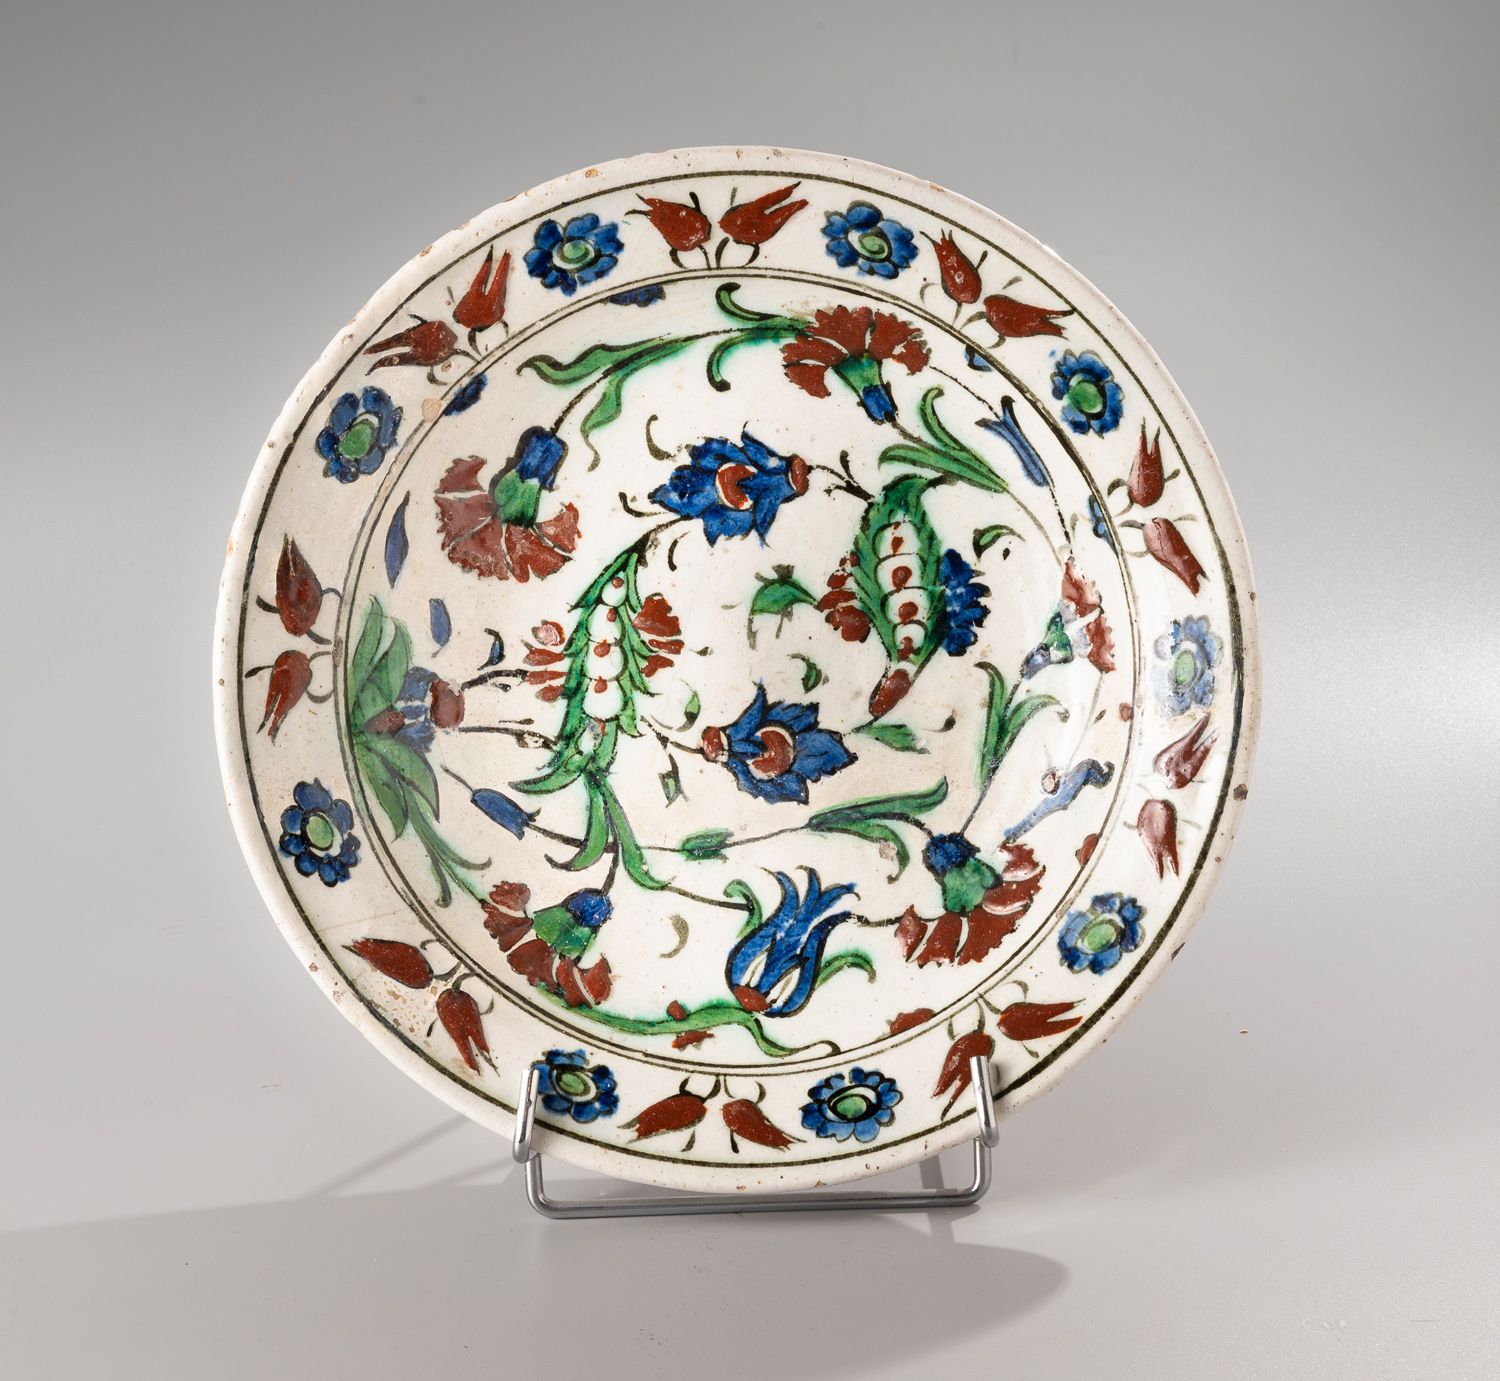 Null IZNIK

带铅釉的圆形硅质陶瓷盘

带有棕榈树、康乃馨、郁金香的多色装饰。

17世纪

D. 28,5cm。

(碎成几块，事故和修复）。)